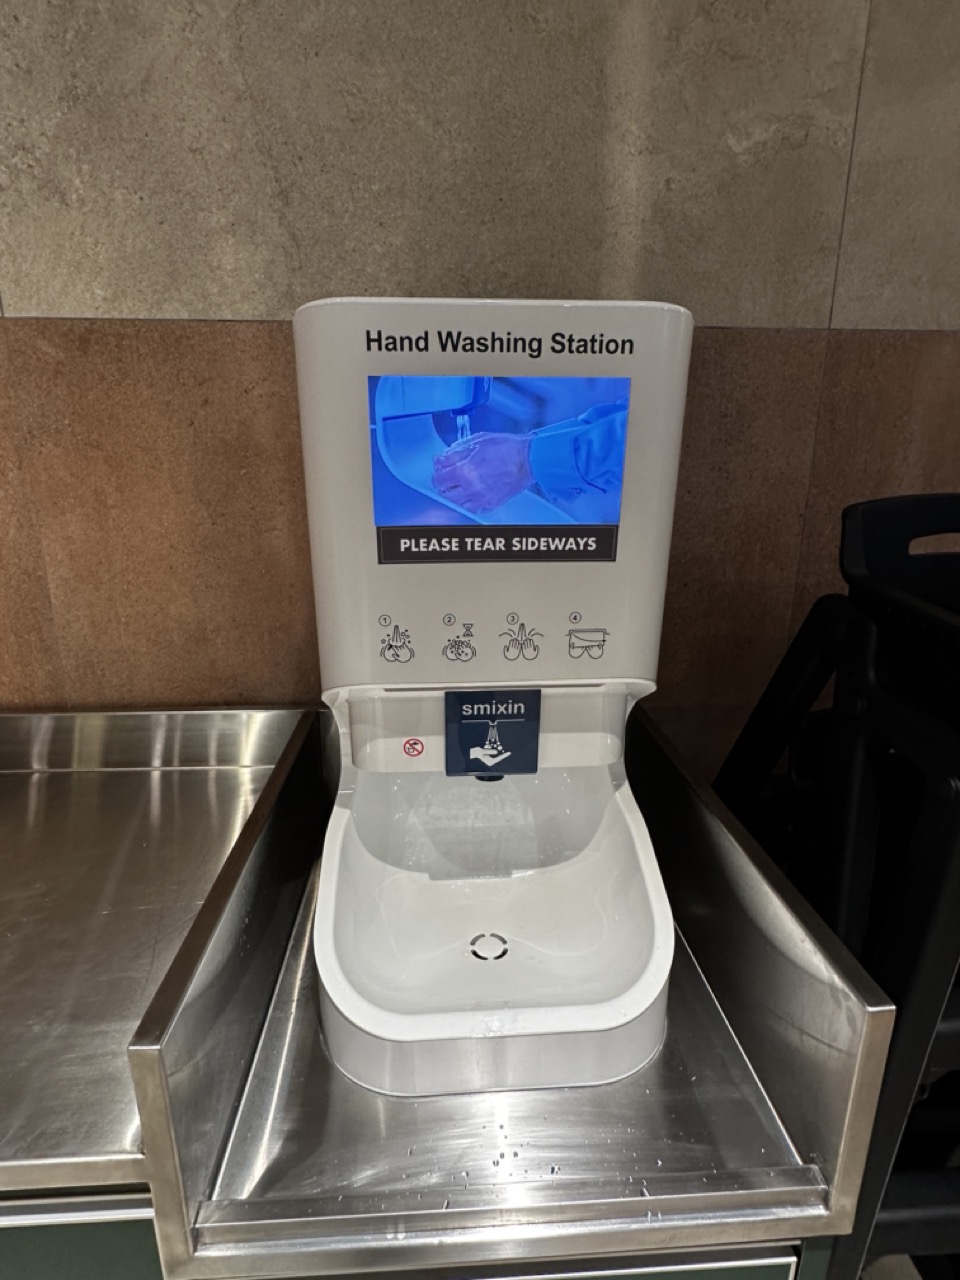 Hand washing station large